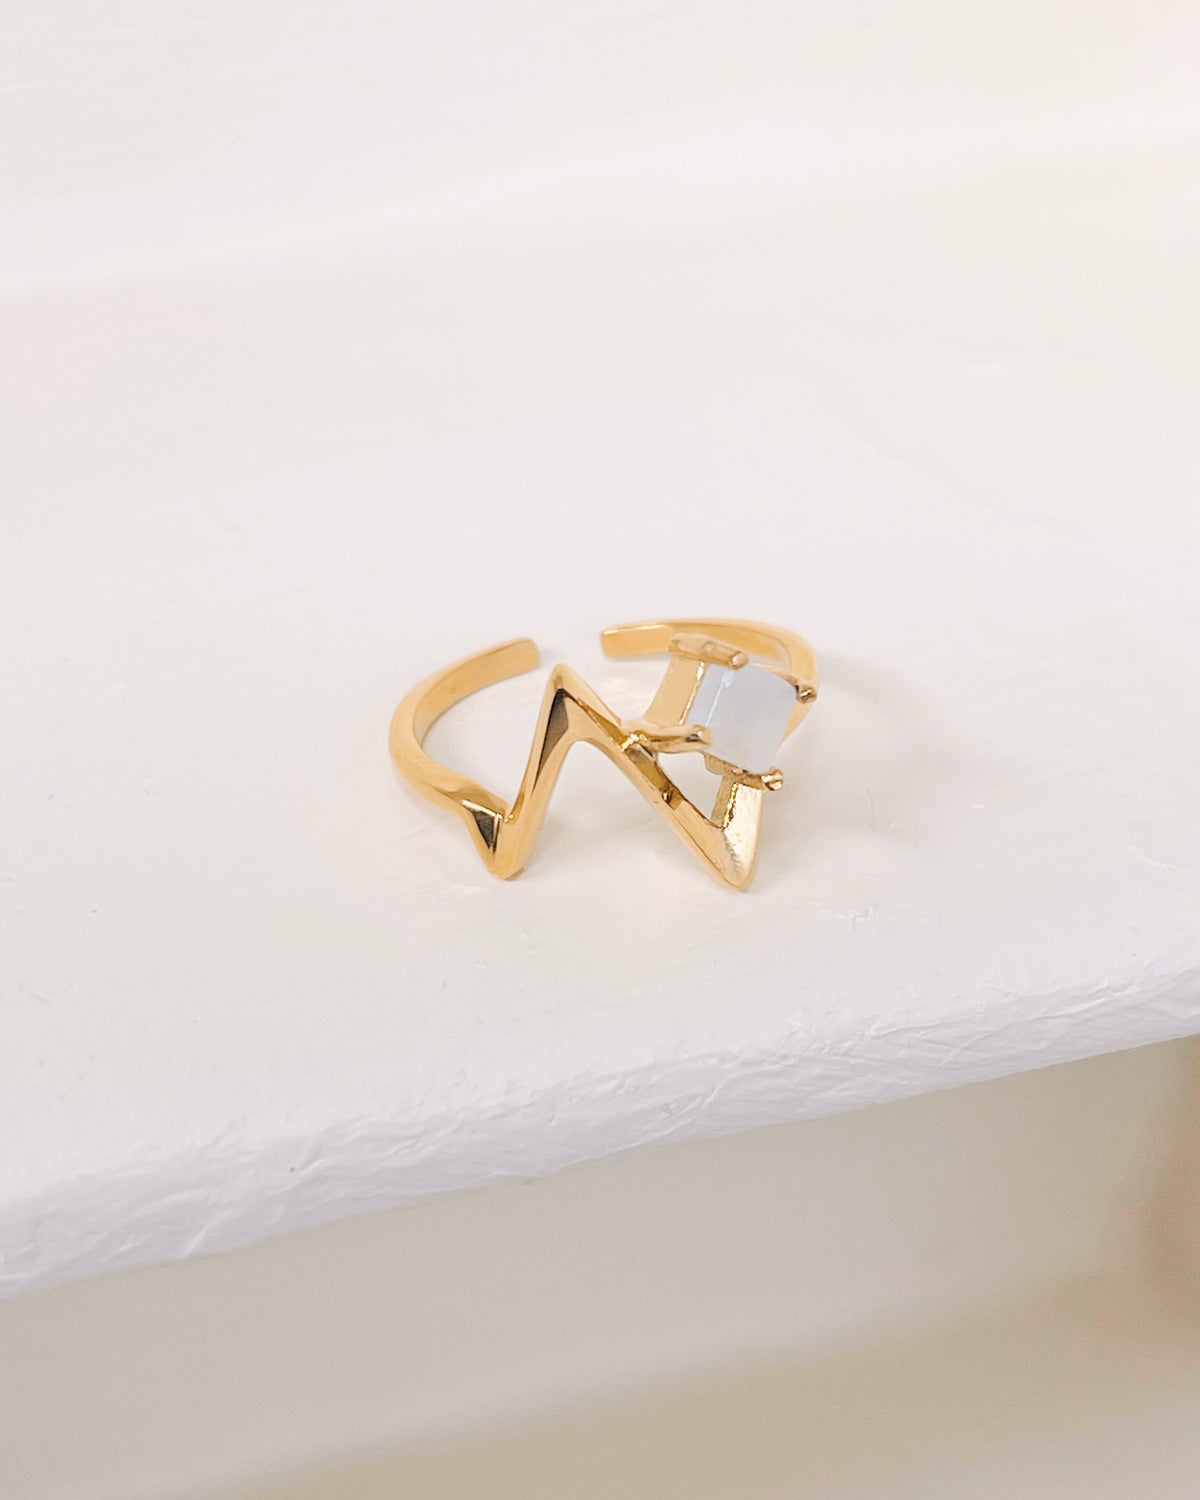 Kamilah Heartbeat Design White Jade Center Stone Gold Ring